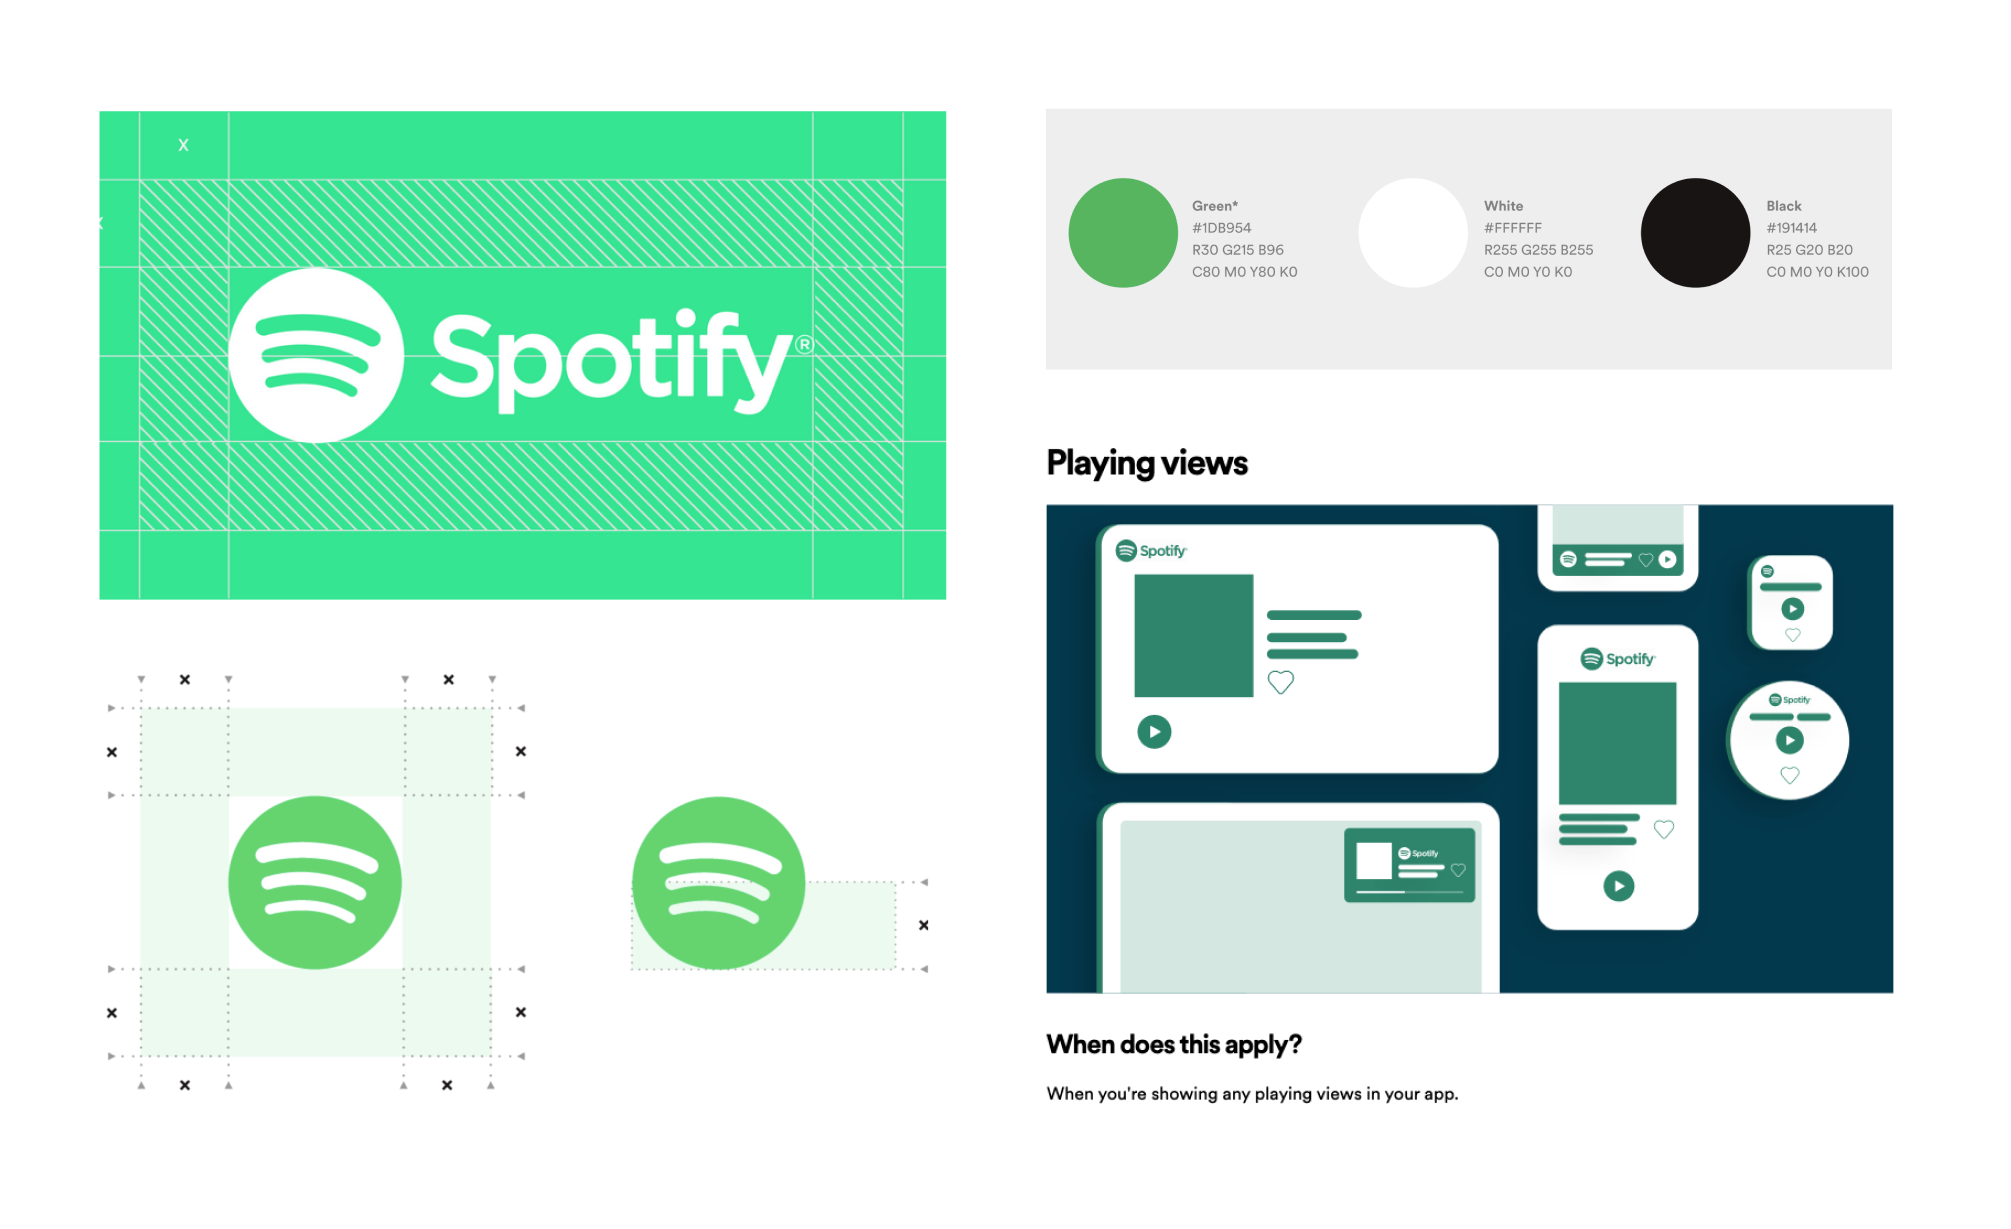 Fragmenty strony internetowej Spotify, które przedstawiają zasady użycia logo, kolorystykę i uproszczone widoki aplikacji.